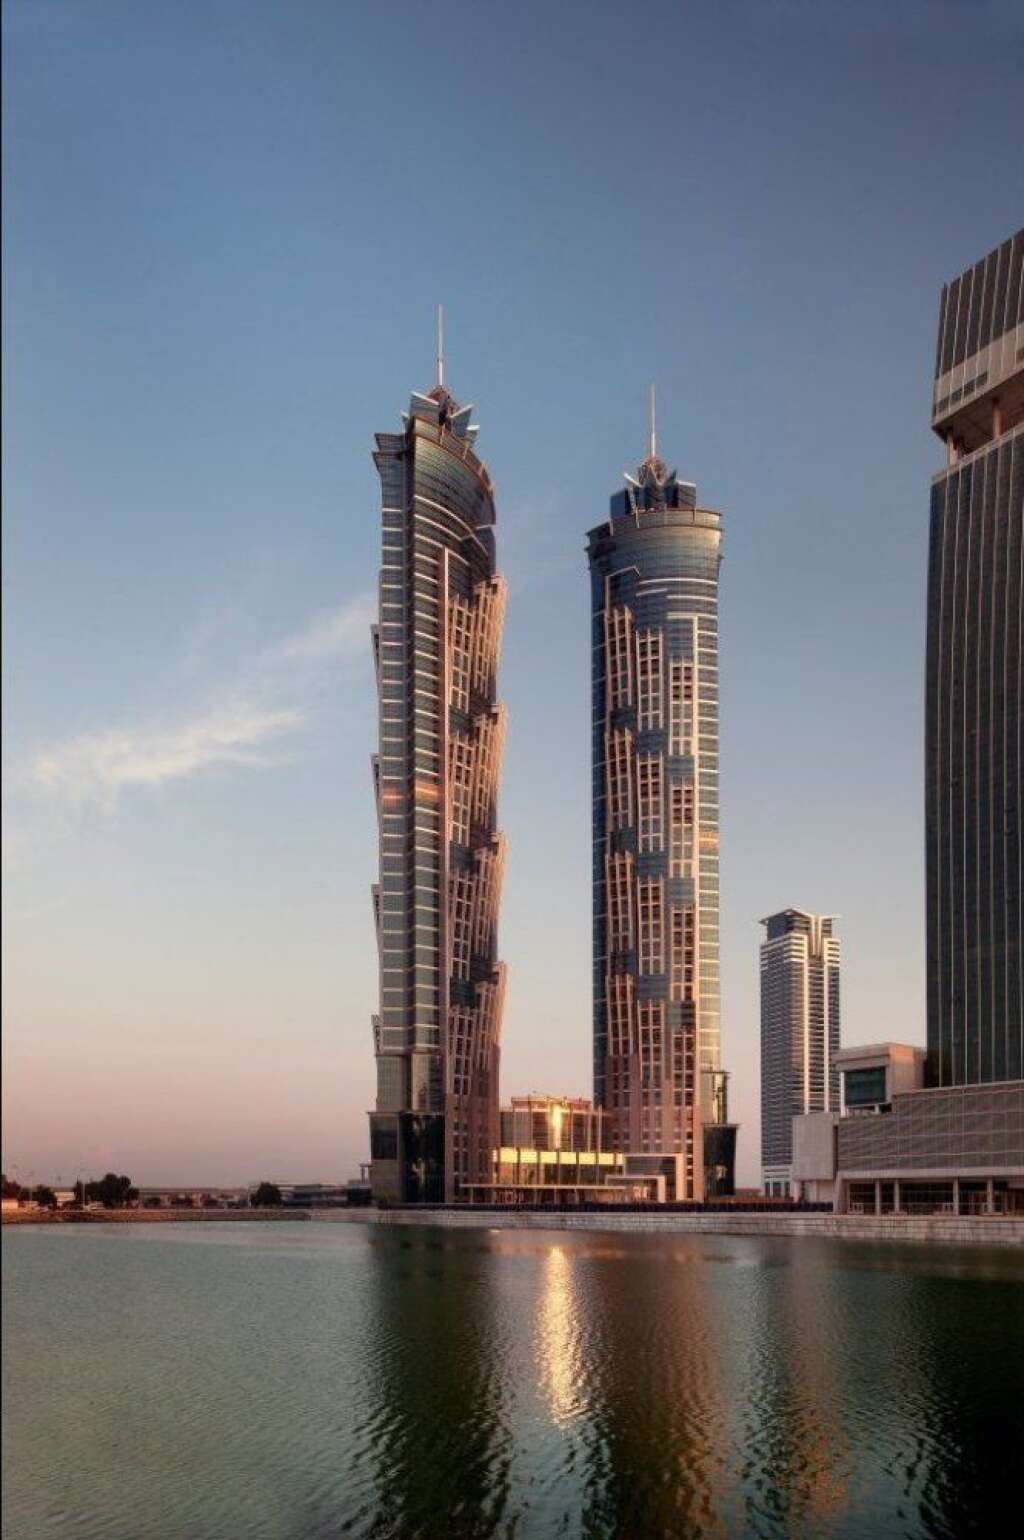 JW Marriott Marquis (Dubai, Emirats Arabes Unis) - <a href="http://www.trivago.com/?aDateRange%5Barr%5D=2013-06-30&aDateRange%5Bdep%5D=2013-07-01&iRoomType=7&iViewType=0&iGeoDistanceItem=8898&iPathId=549&">4. JW Marriott Marquis (Dubai, Emirats Arabes Unis)</a>  Cette structure stratosphérique s'élève à 355 mètres et est composée de plus de 800 chambres sur 77 étages. L'hôtel possède aussi 14 restaurants. Les chambres et suites ont été aménagées avec des matériaux de haute qualité dans un style moderne et minimaliste. La vue sur la ville, et principalement sur le quartier financier de Dubaï, est à couper le souffle. Et pour sortir du tumulte de la ville, son spa propose d'anciennes techniques de guérisons et toute une gamme de traitements traditionnels.  <em>(Photo Source: JW Marriott Marquis) </em>  <a href="http://www.trivago.com/?aDateRange%5Barr%5D=2013-06-30&aDateRange%5Bdep%5D=2013-07-01&iRoomType=7&iViewType=0&iGeoDistanceItem=8898&iPathId=549&">Voir plus de photos du JW Marriott Marquis>></a>